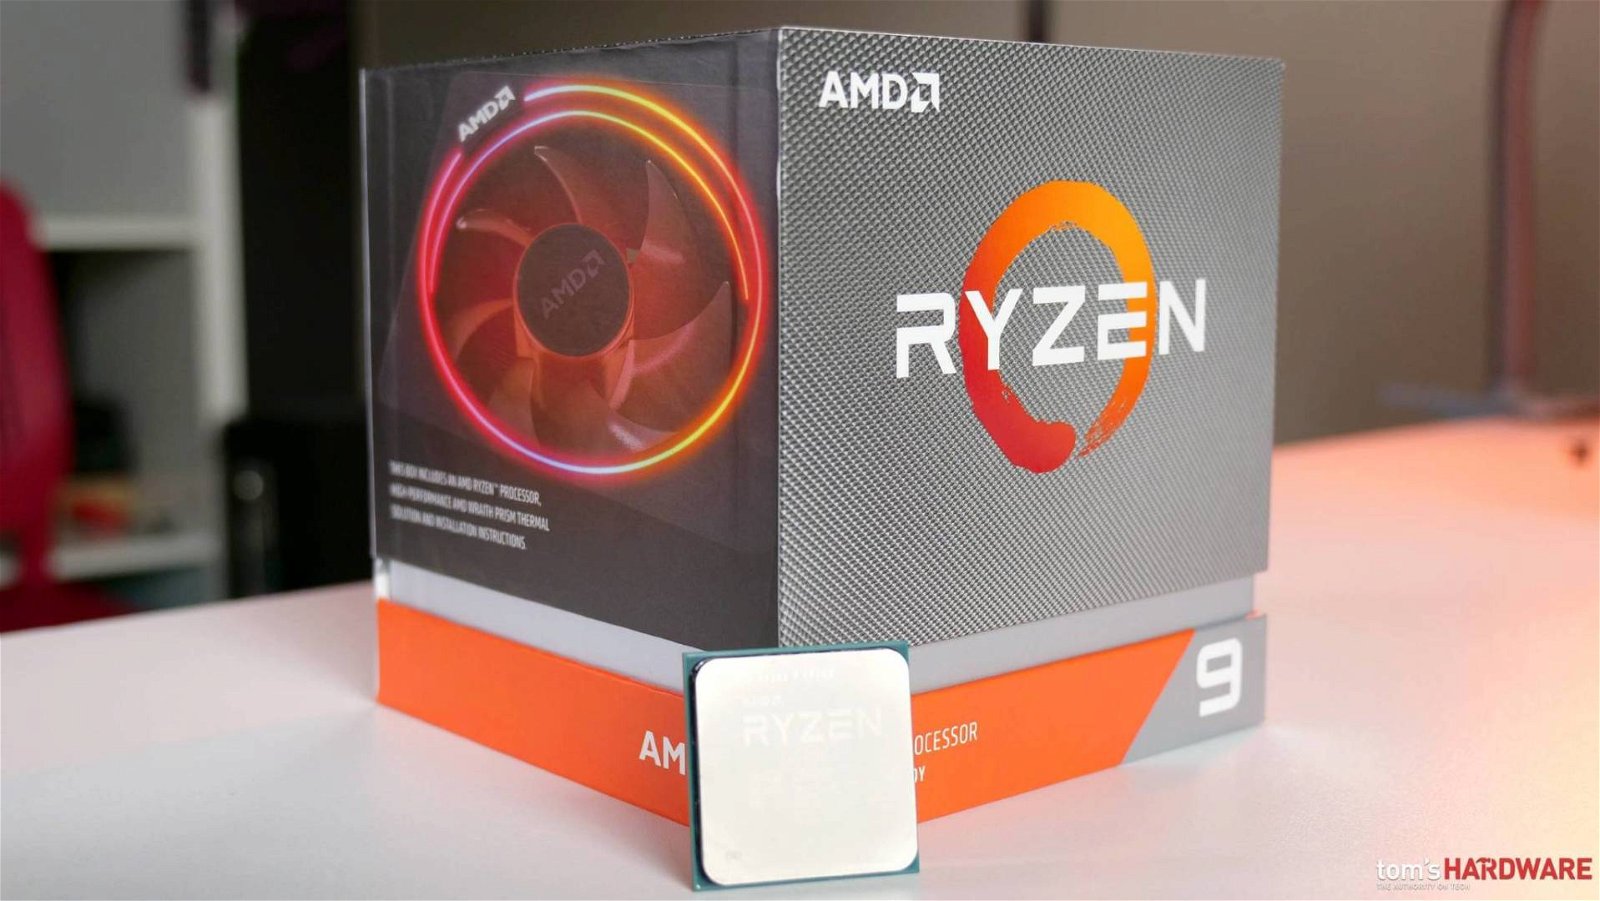 Immagine di AMD Ryzen 9 3900 provato in anteprima, una CPU da record del mondo